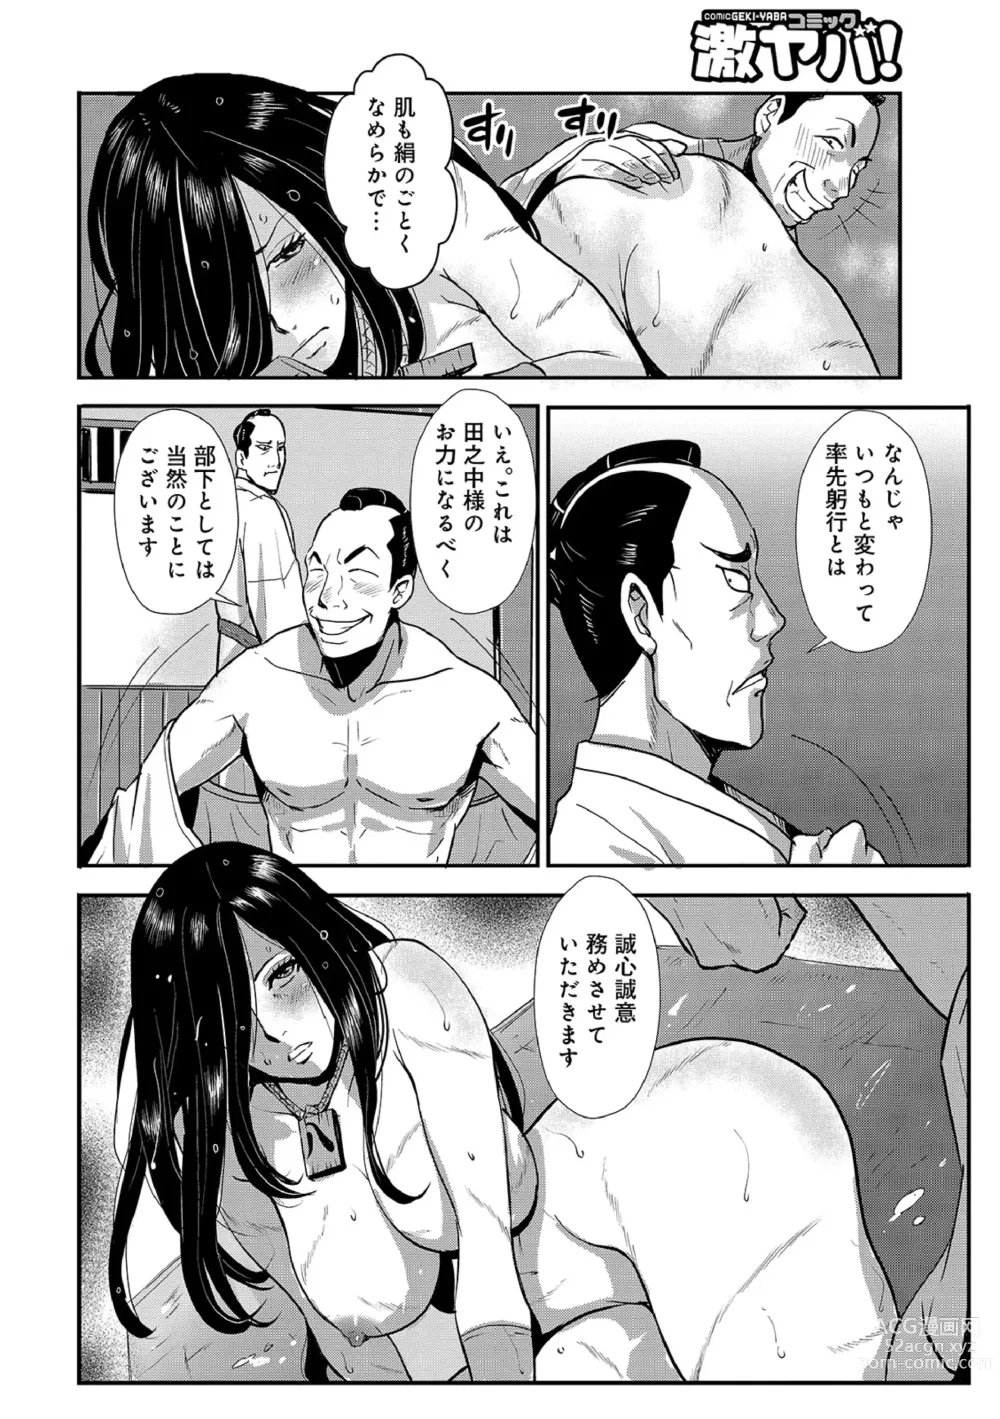 Page 12 of manga Harami samurai 11 ~Saigen Hatenu Koukan Seme to  Zecchou no Etsu~